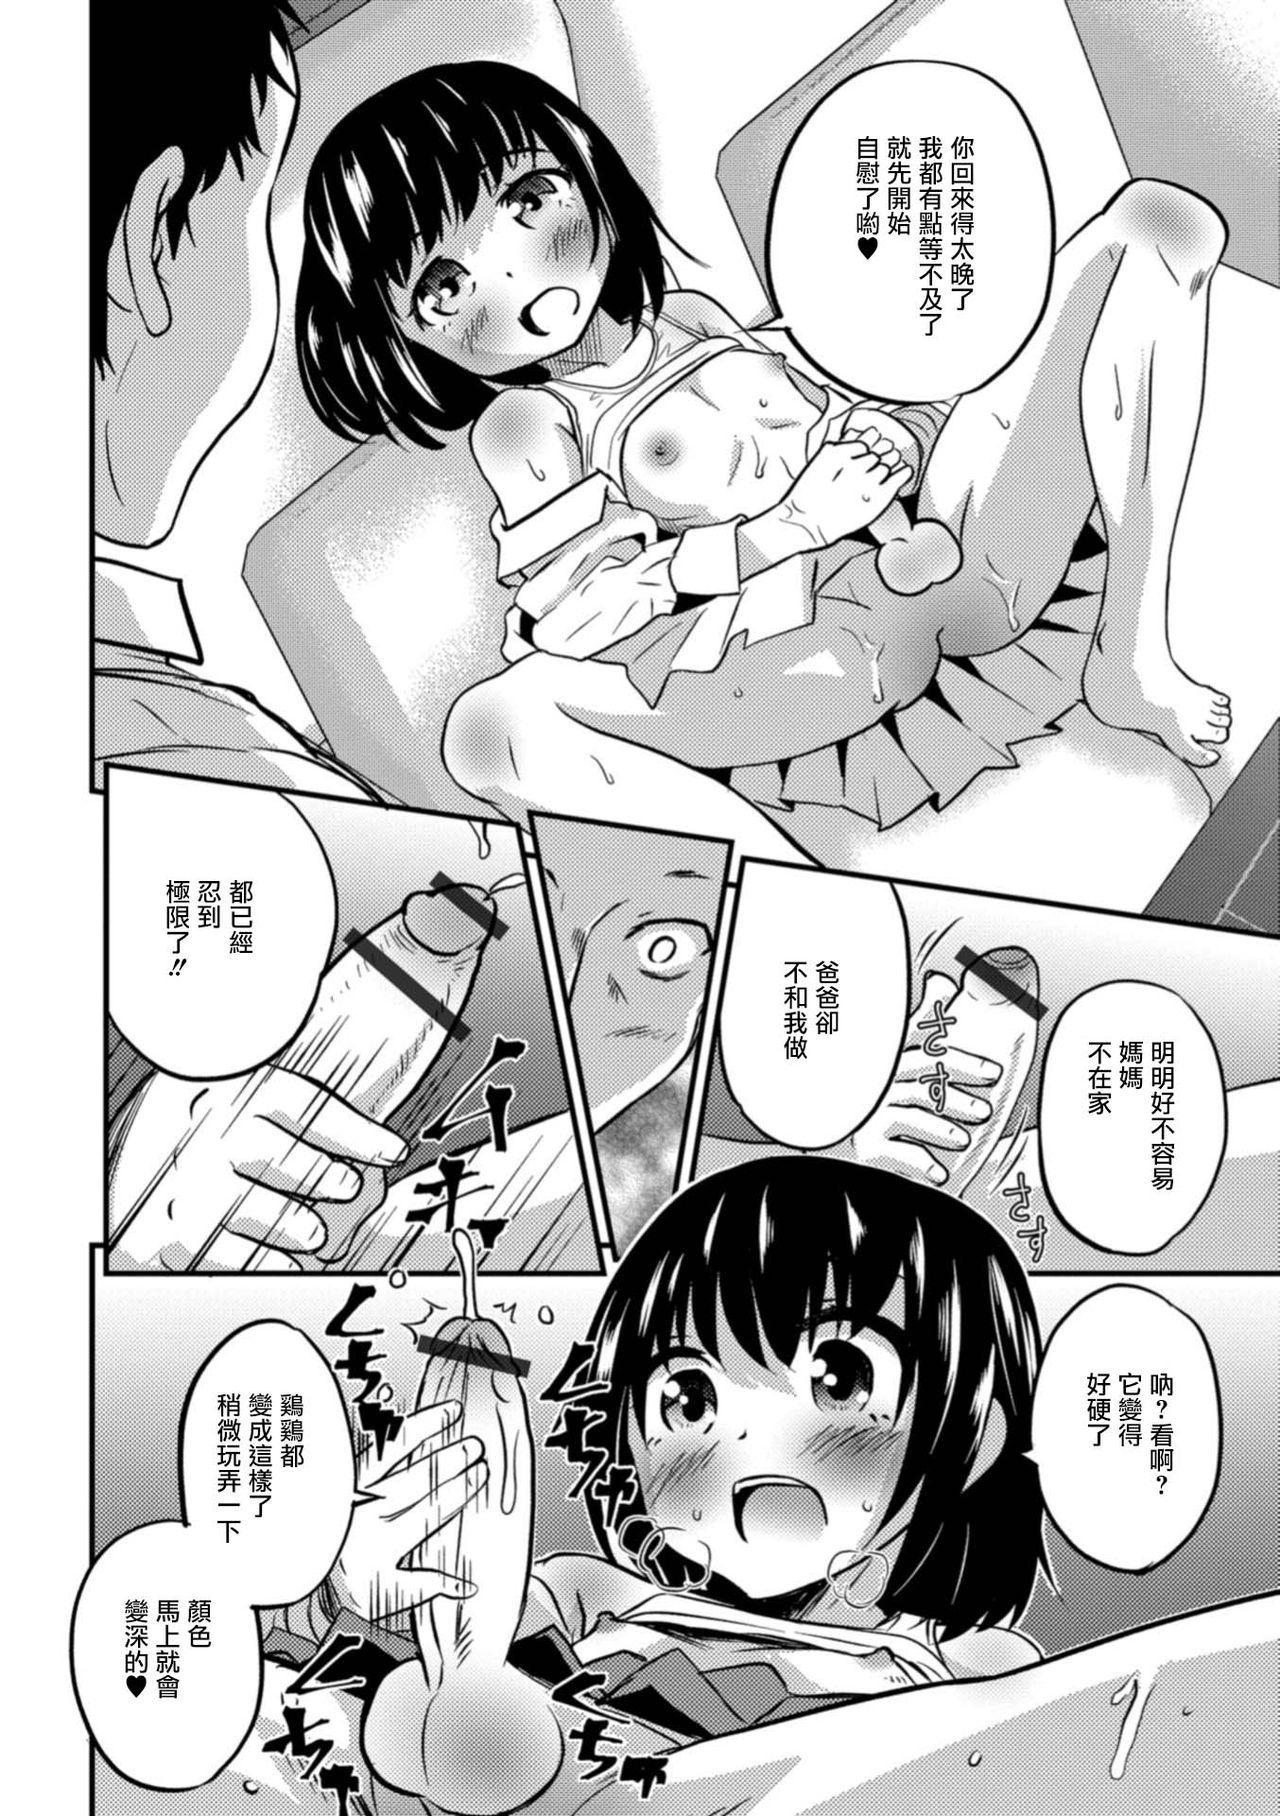 Gritona Kimi no Tsureko ni Koishiteru. 6 Forever Otokonoko! Storyline - Page 6